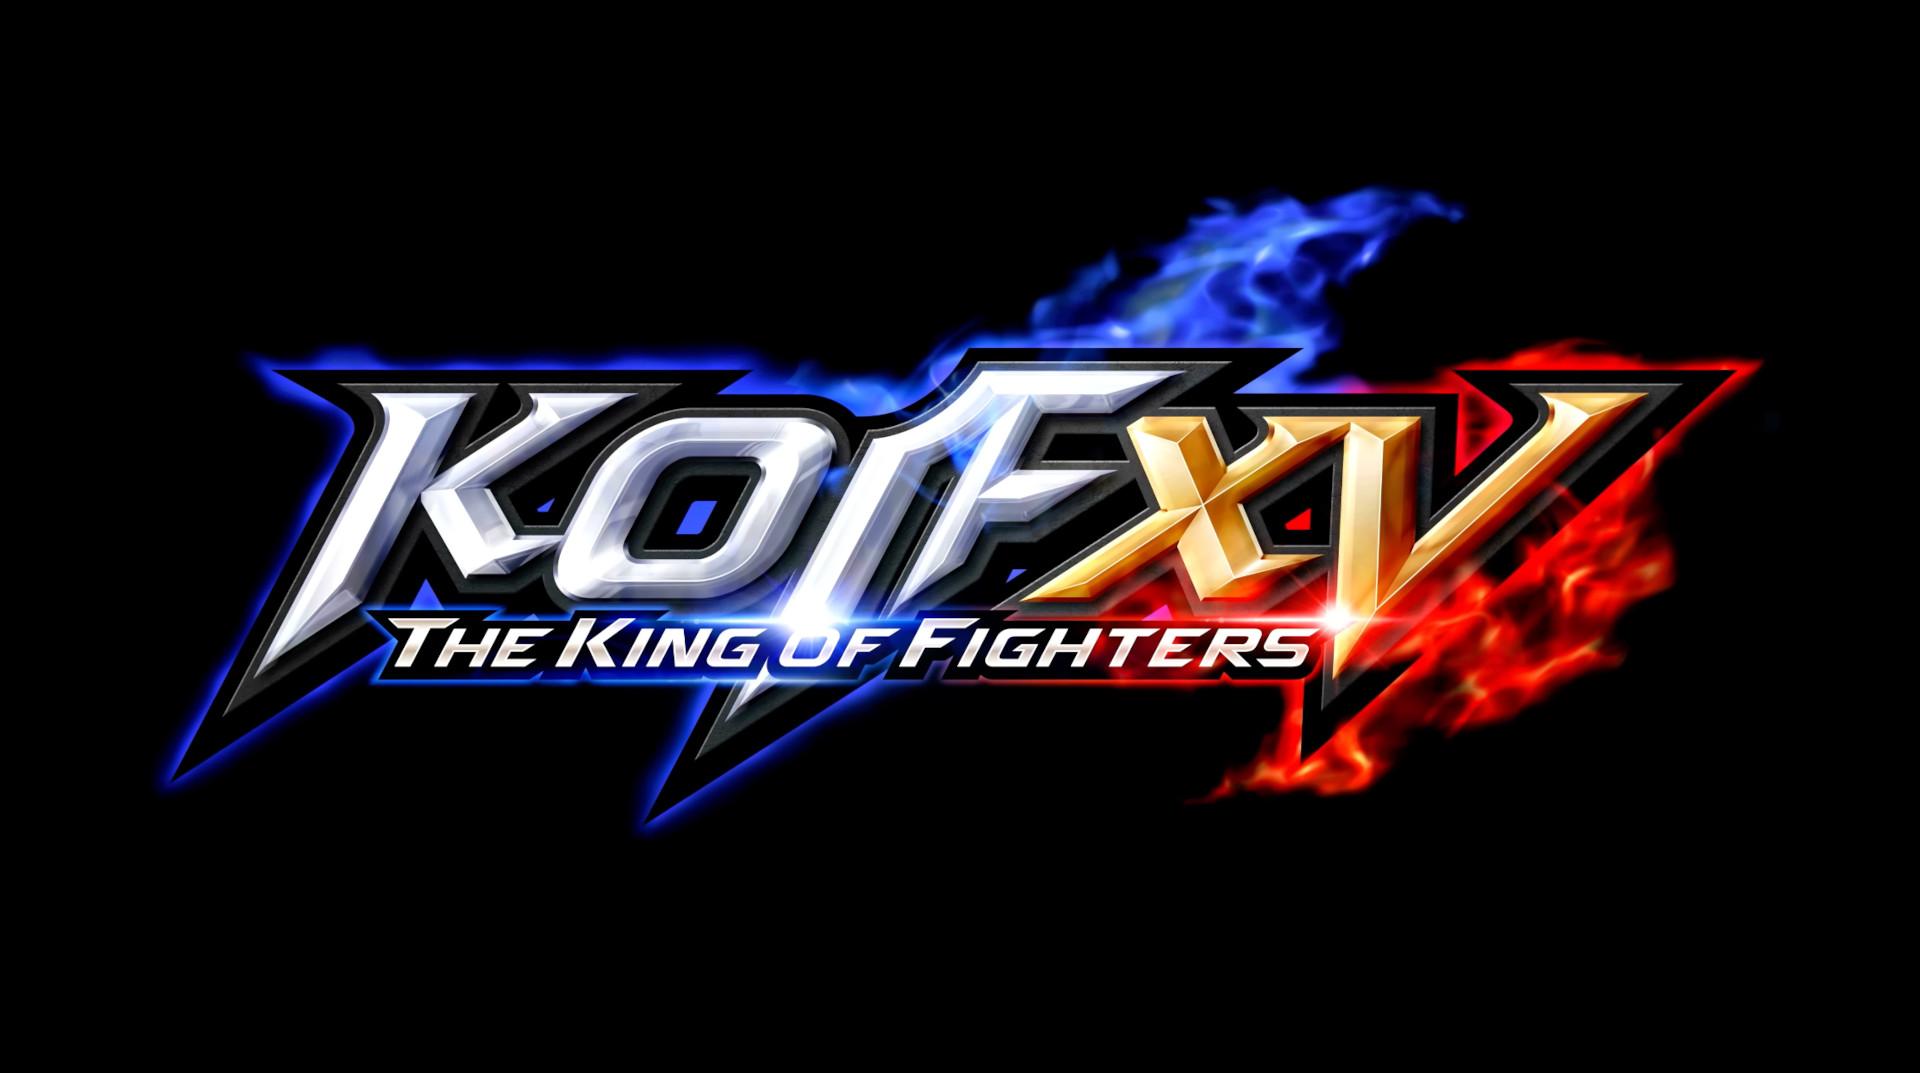 KOF XV: Goenitz, Crossplay e Patch 1.92 lançados hoje!